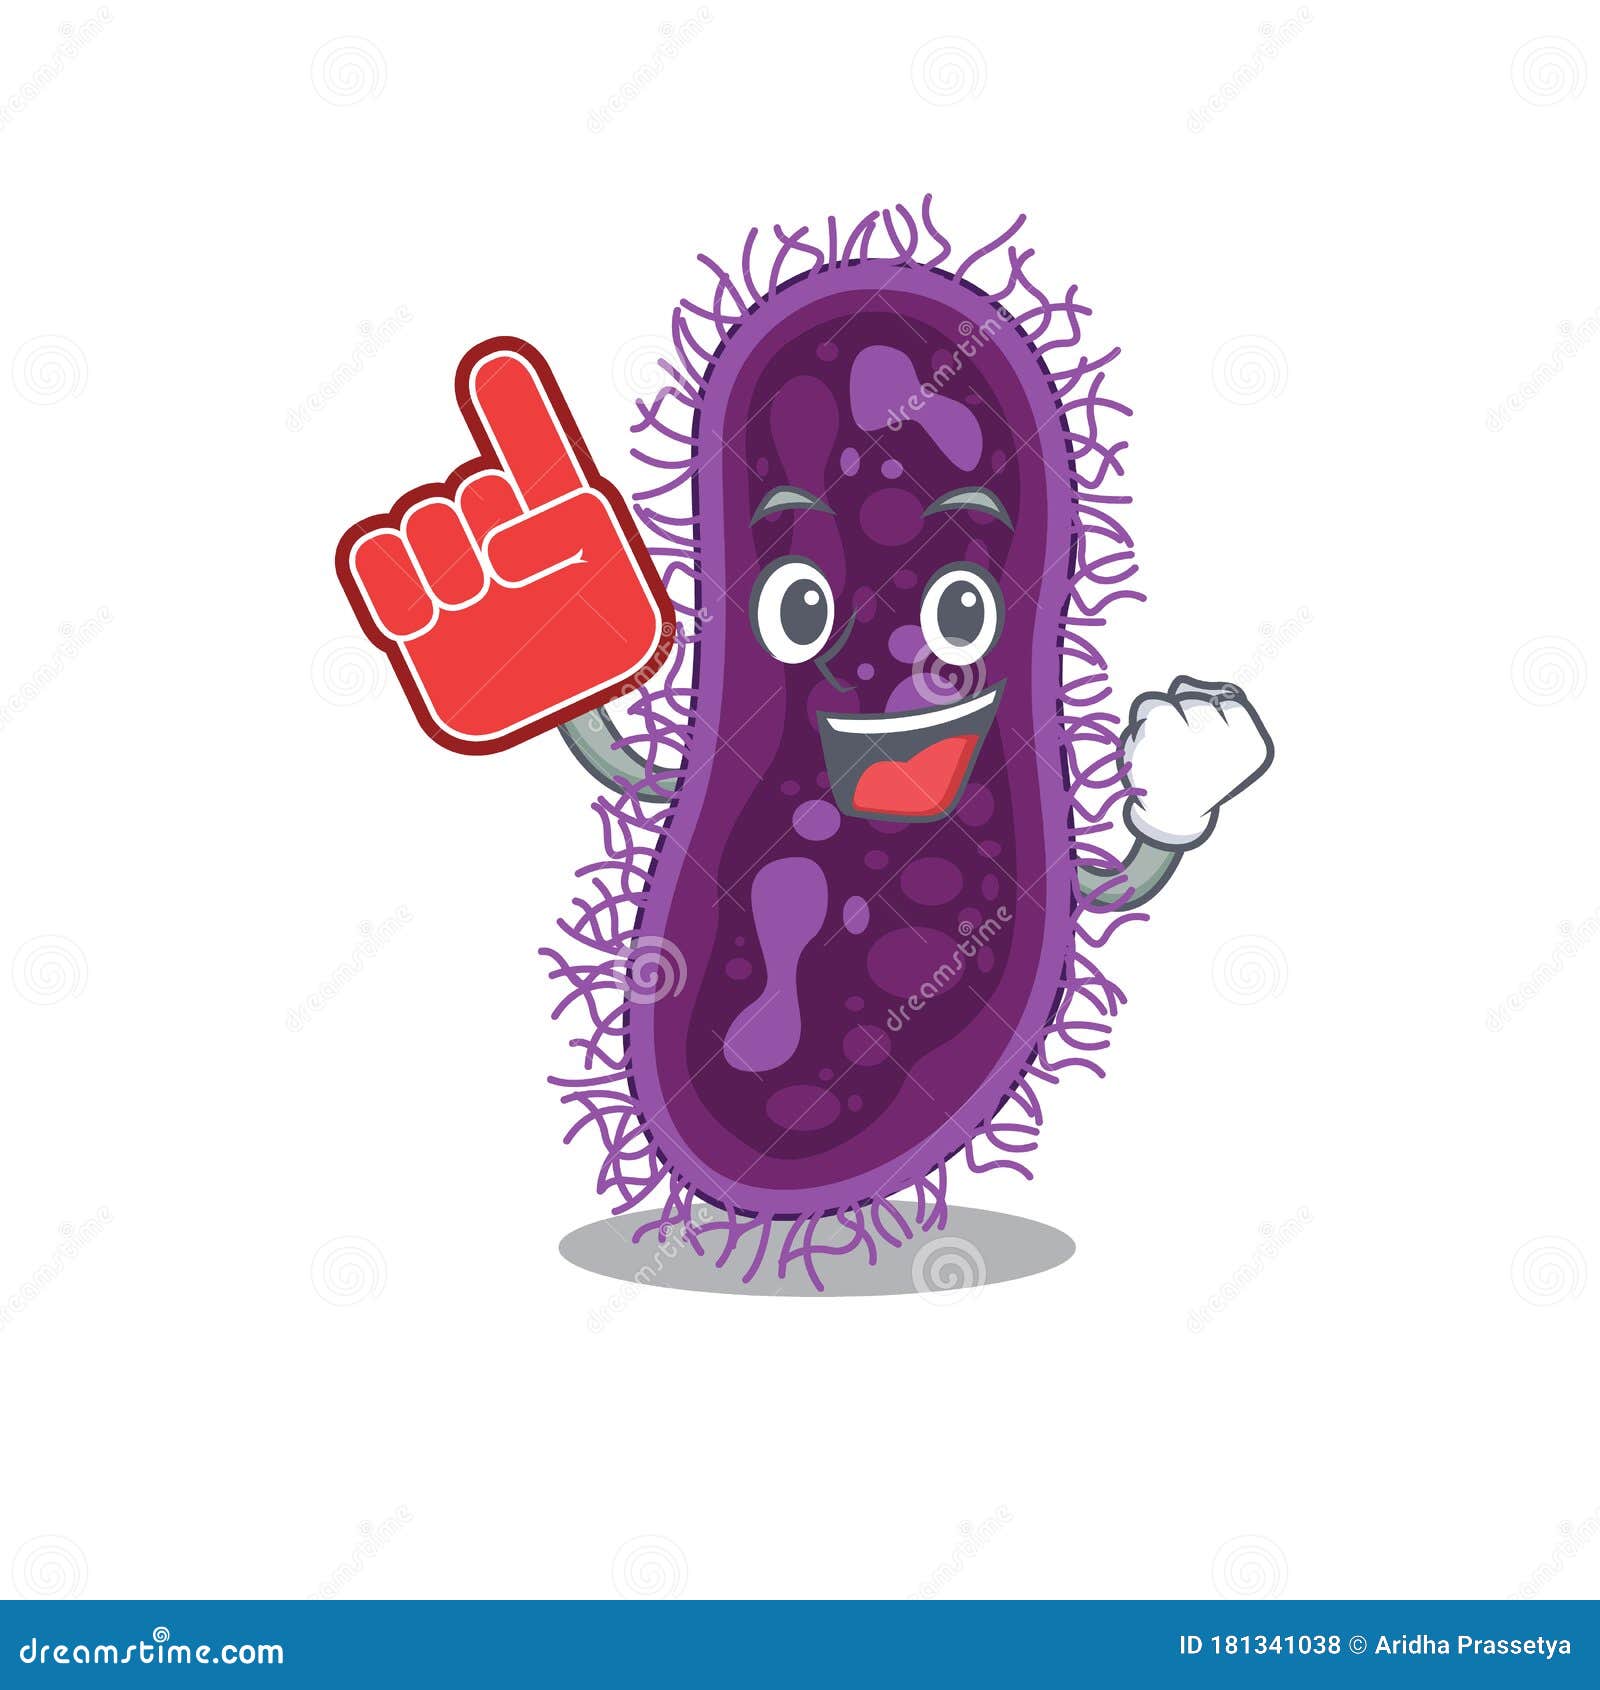 Lactobacillus Rhamnosus Bacteria Presented in Cartoon Character Design ...